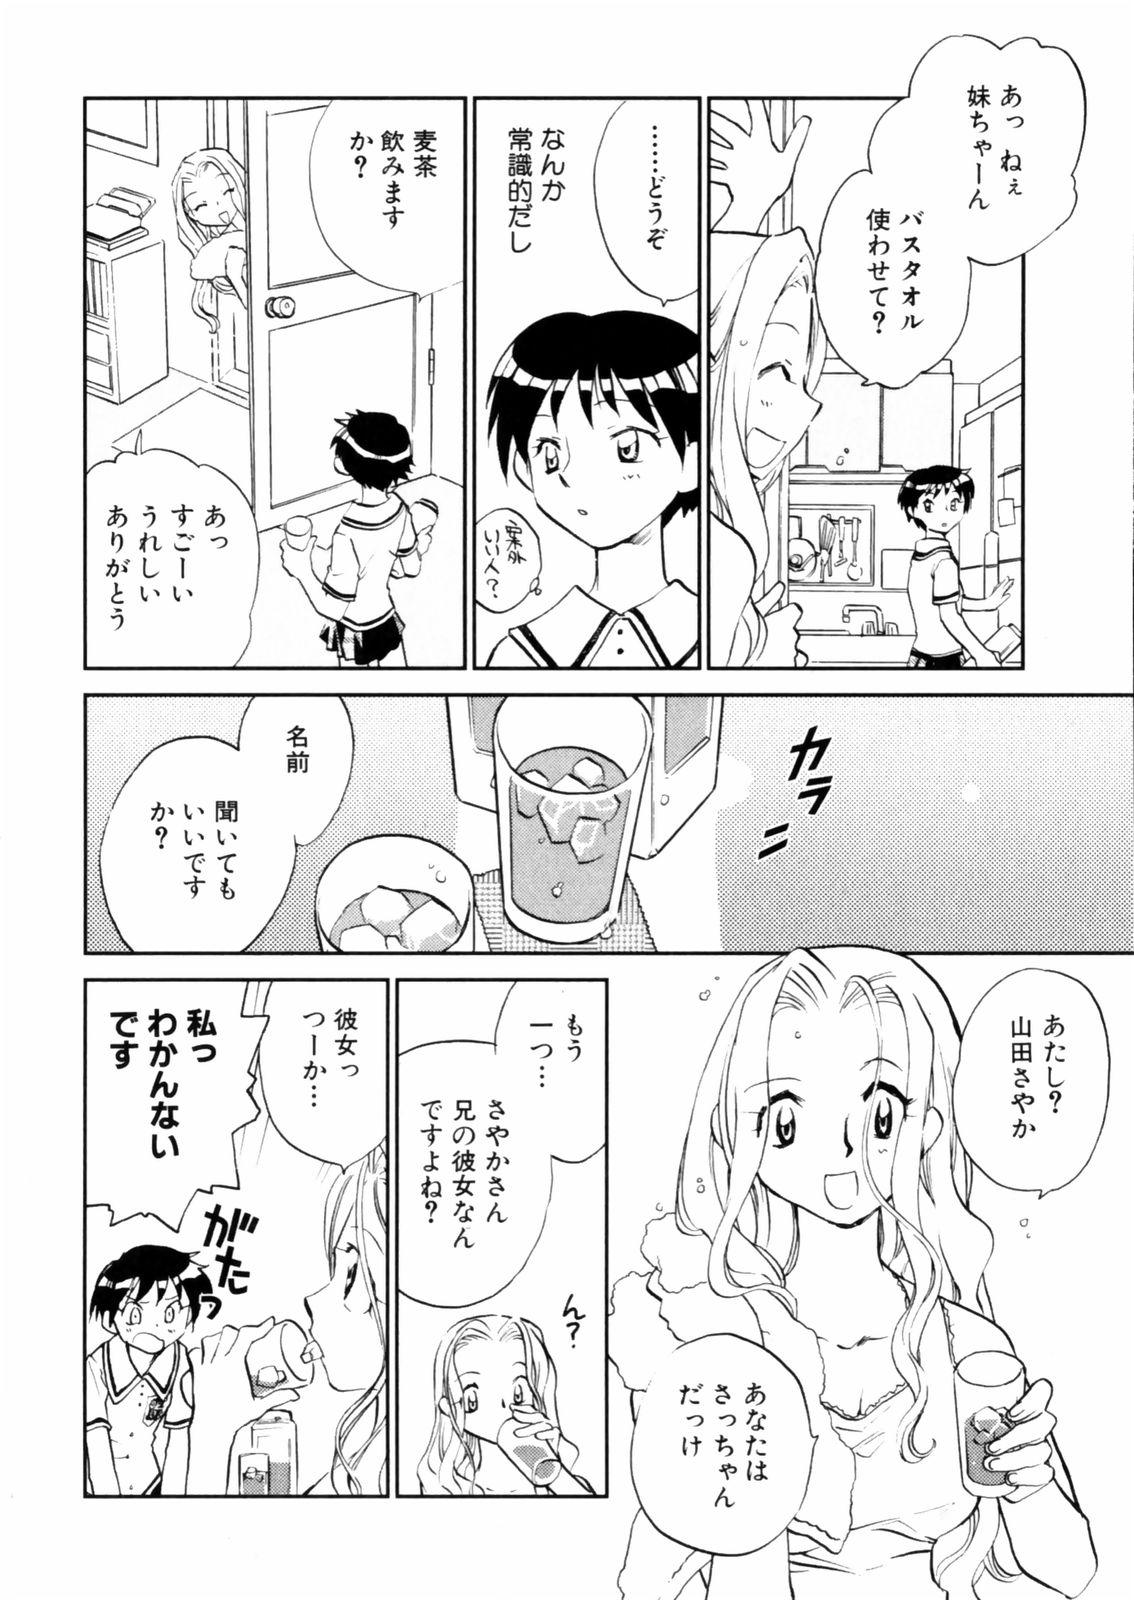 [Okano Ahiru] Hanasake ! Otome Juku (Otome Private Tutoring School) Vol.2 143